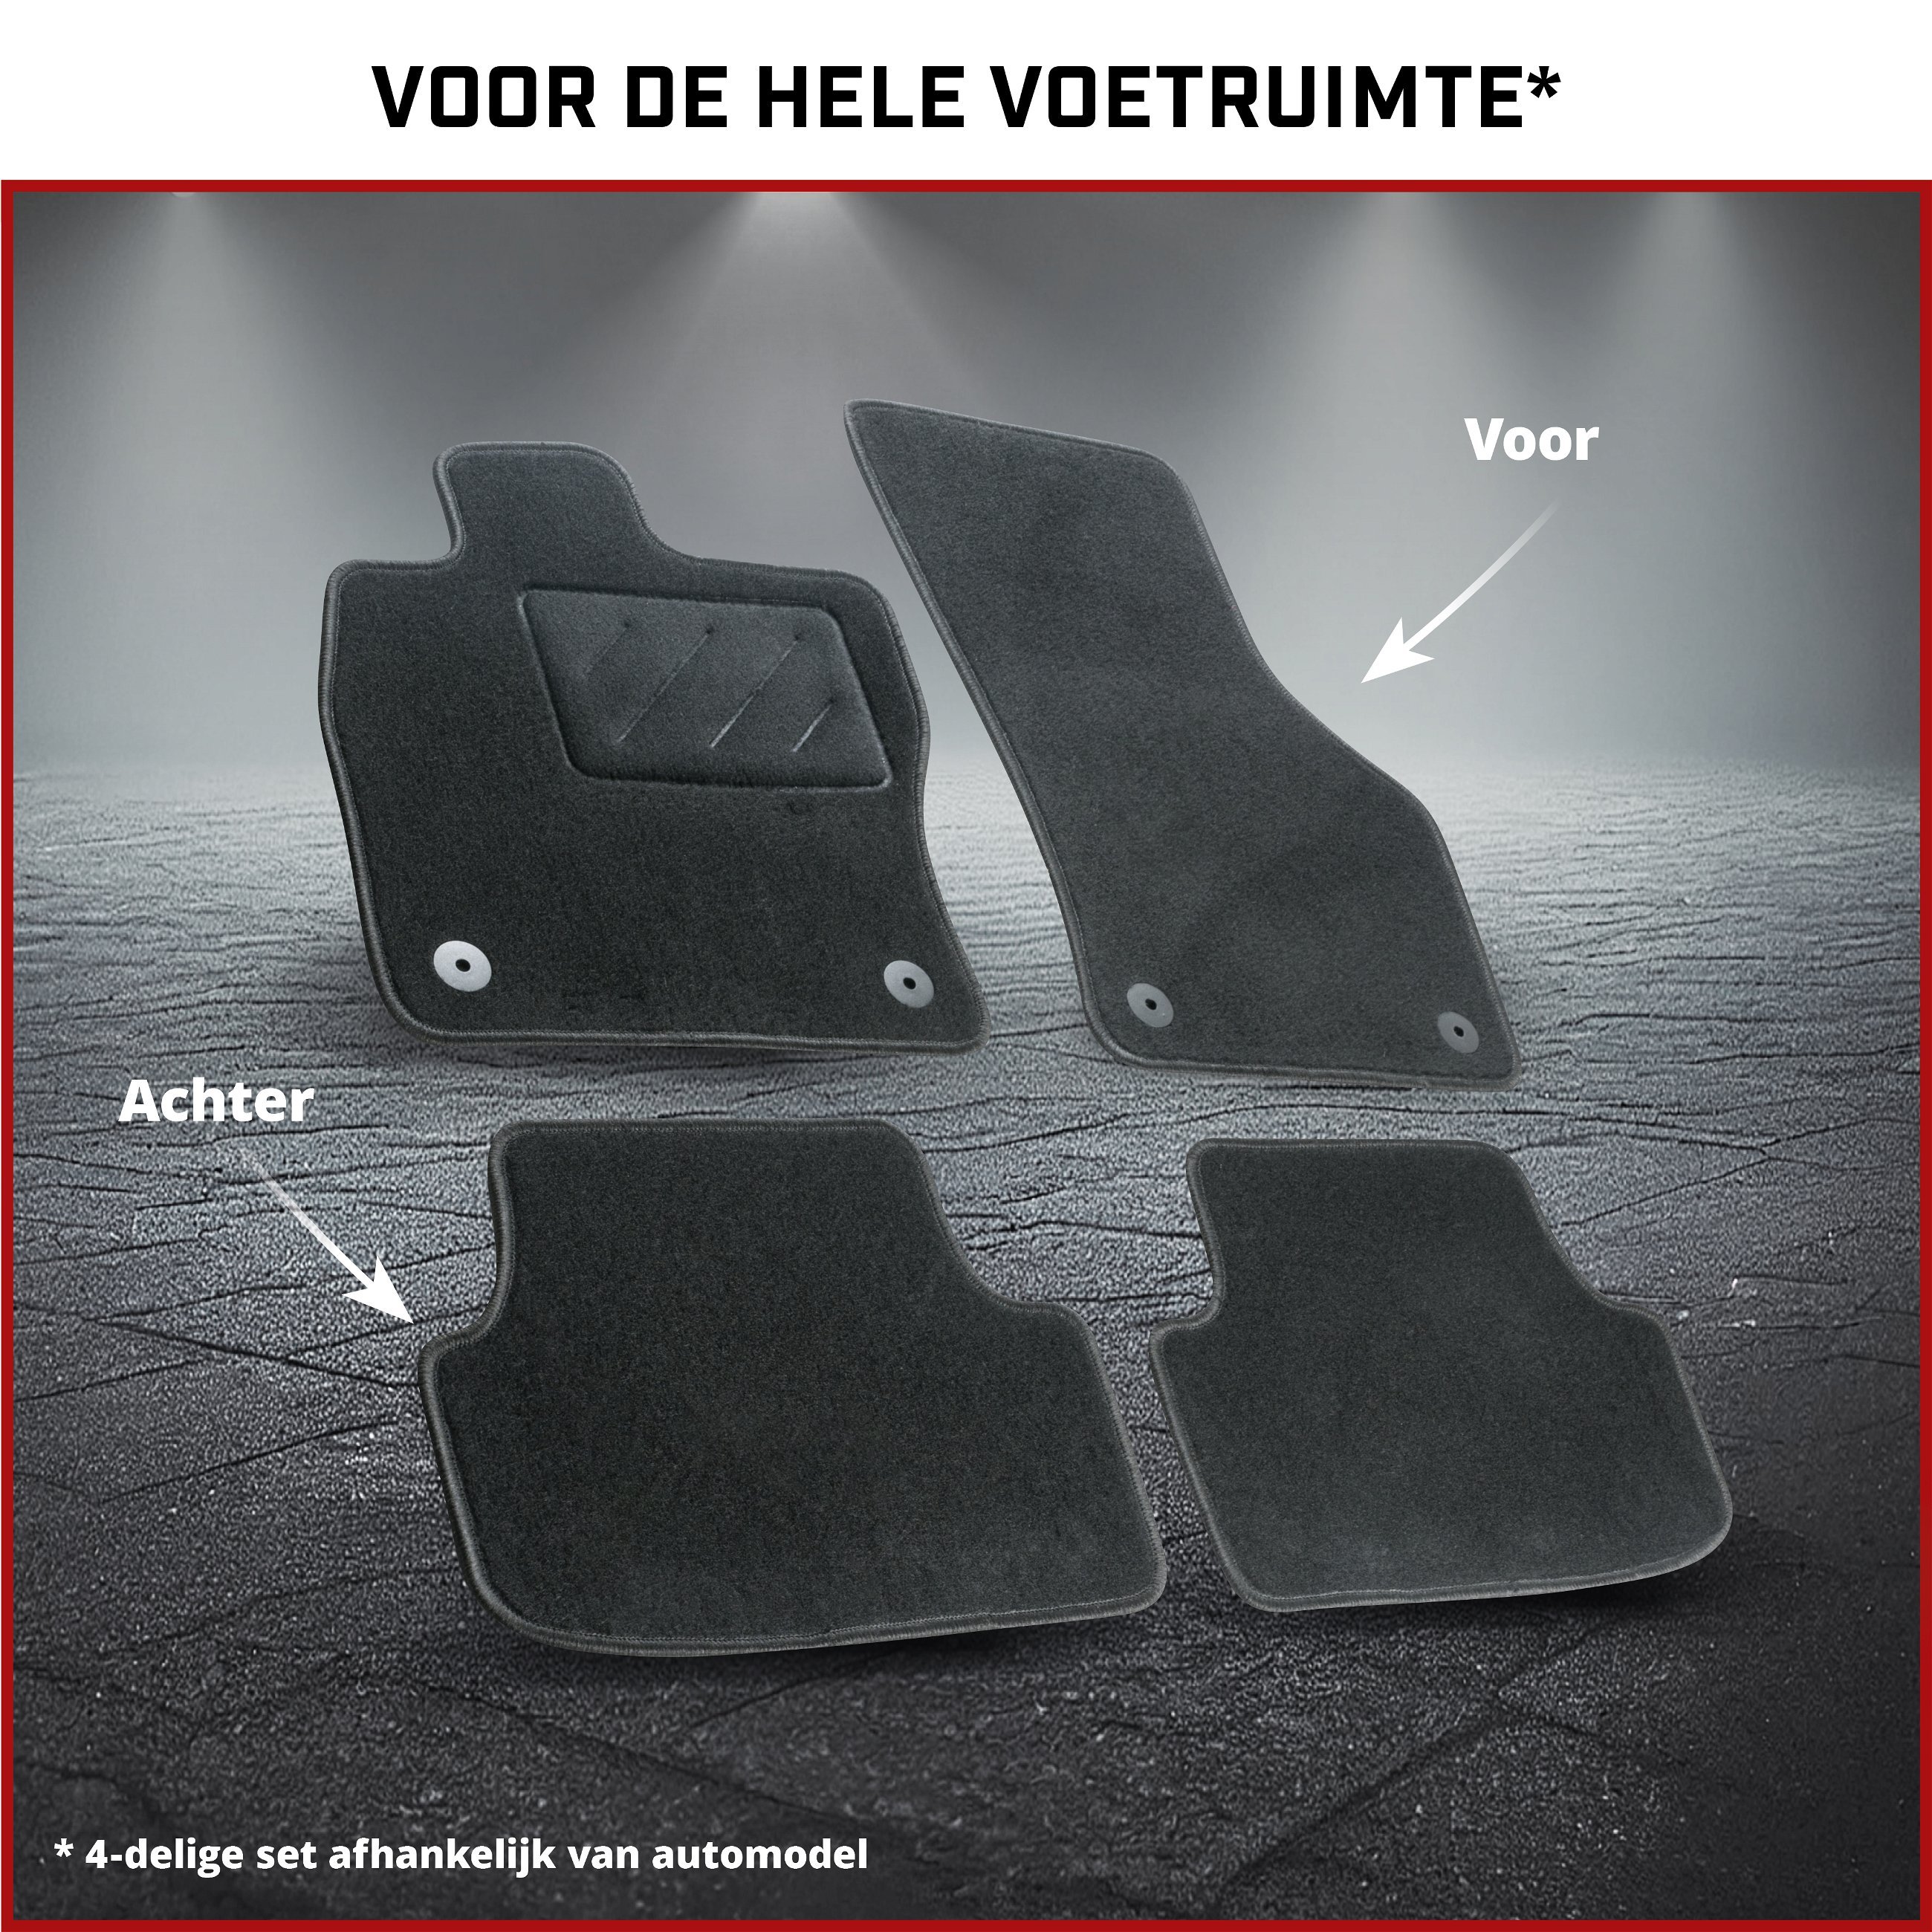 Naaldvilt Velours voetmatten geschikt voor Opel Astra H 01/2004-05/2014, Astra H Caravan 08/2004-05/2014, Astra H GTC 03/2005-10/2010